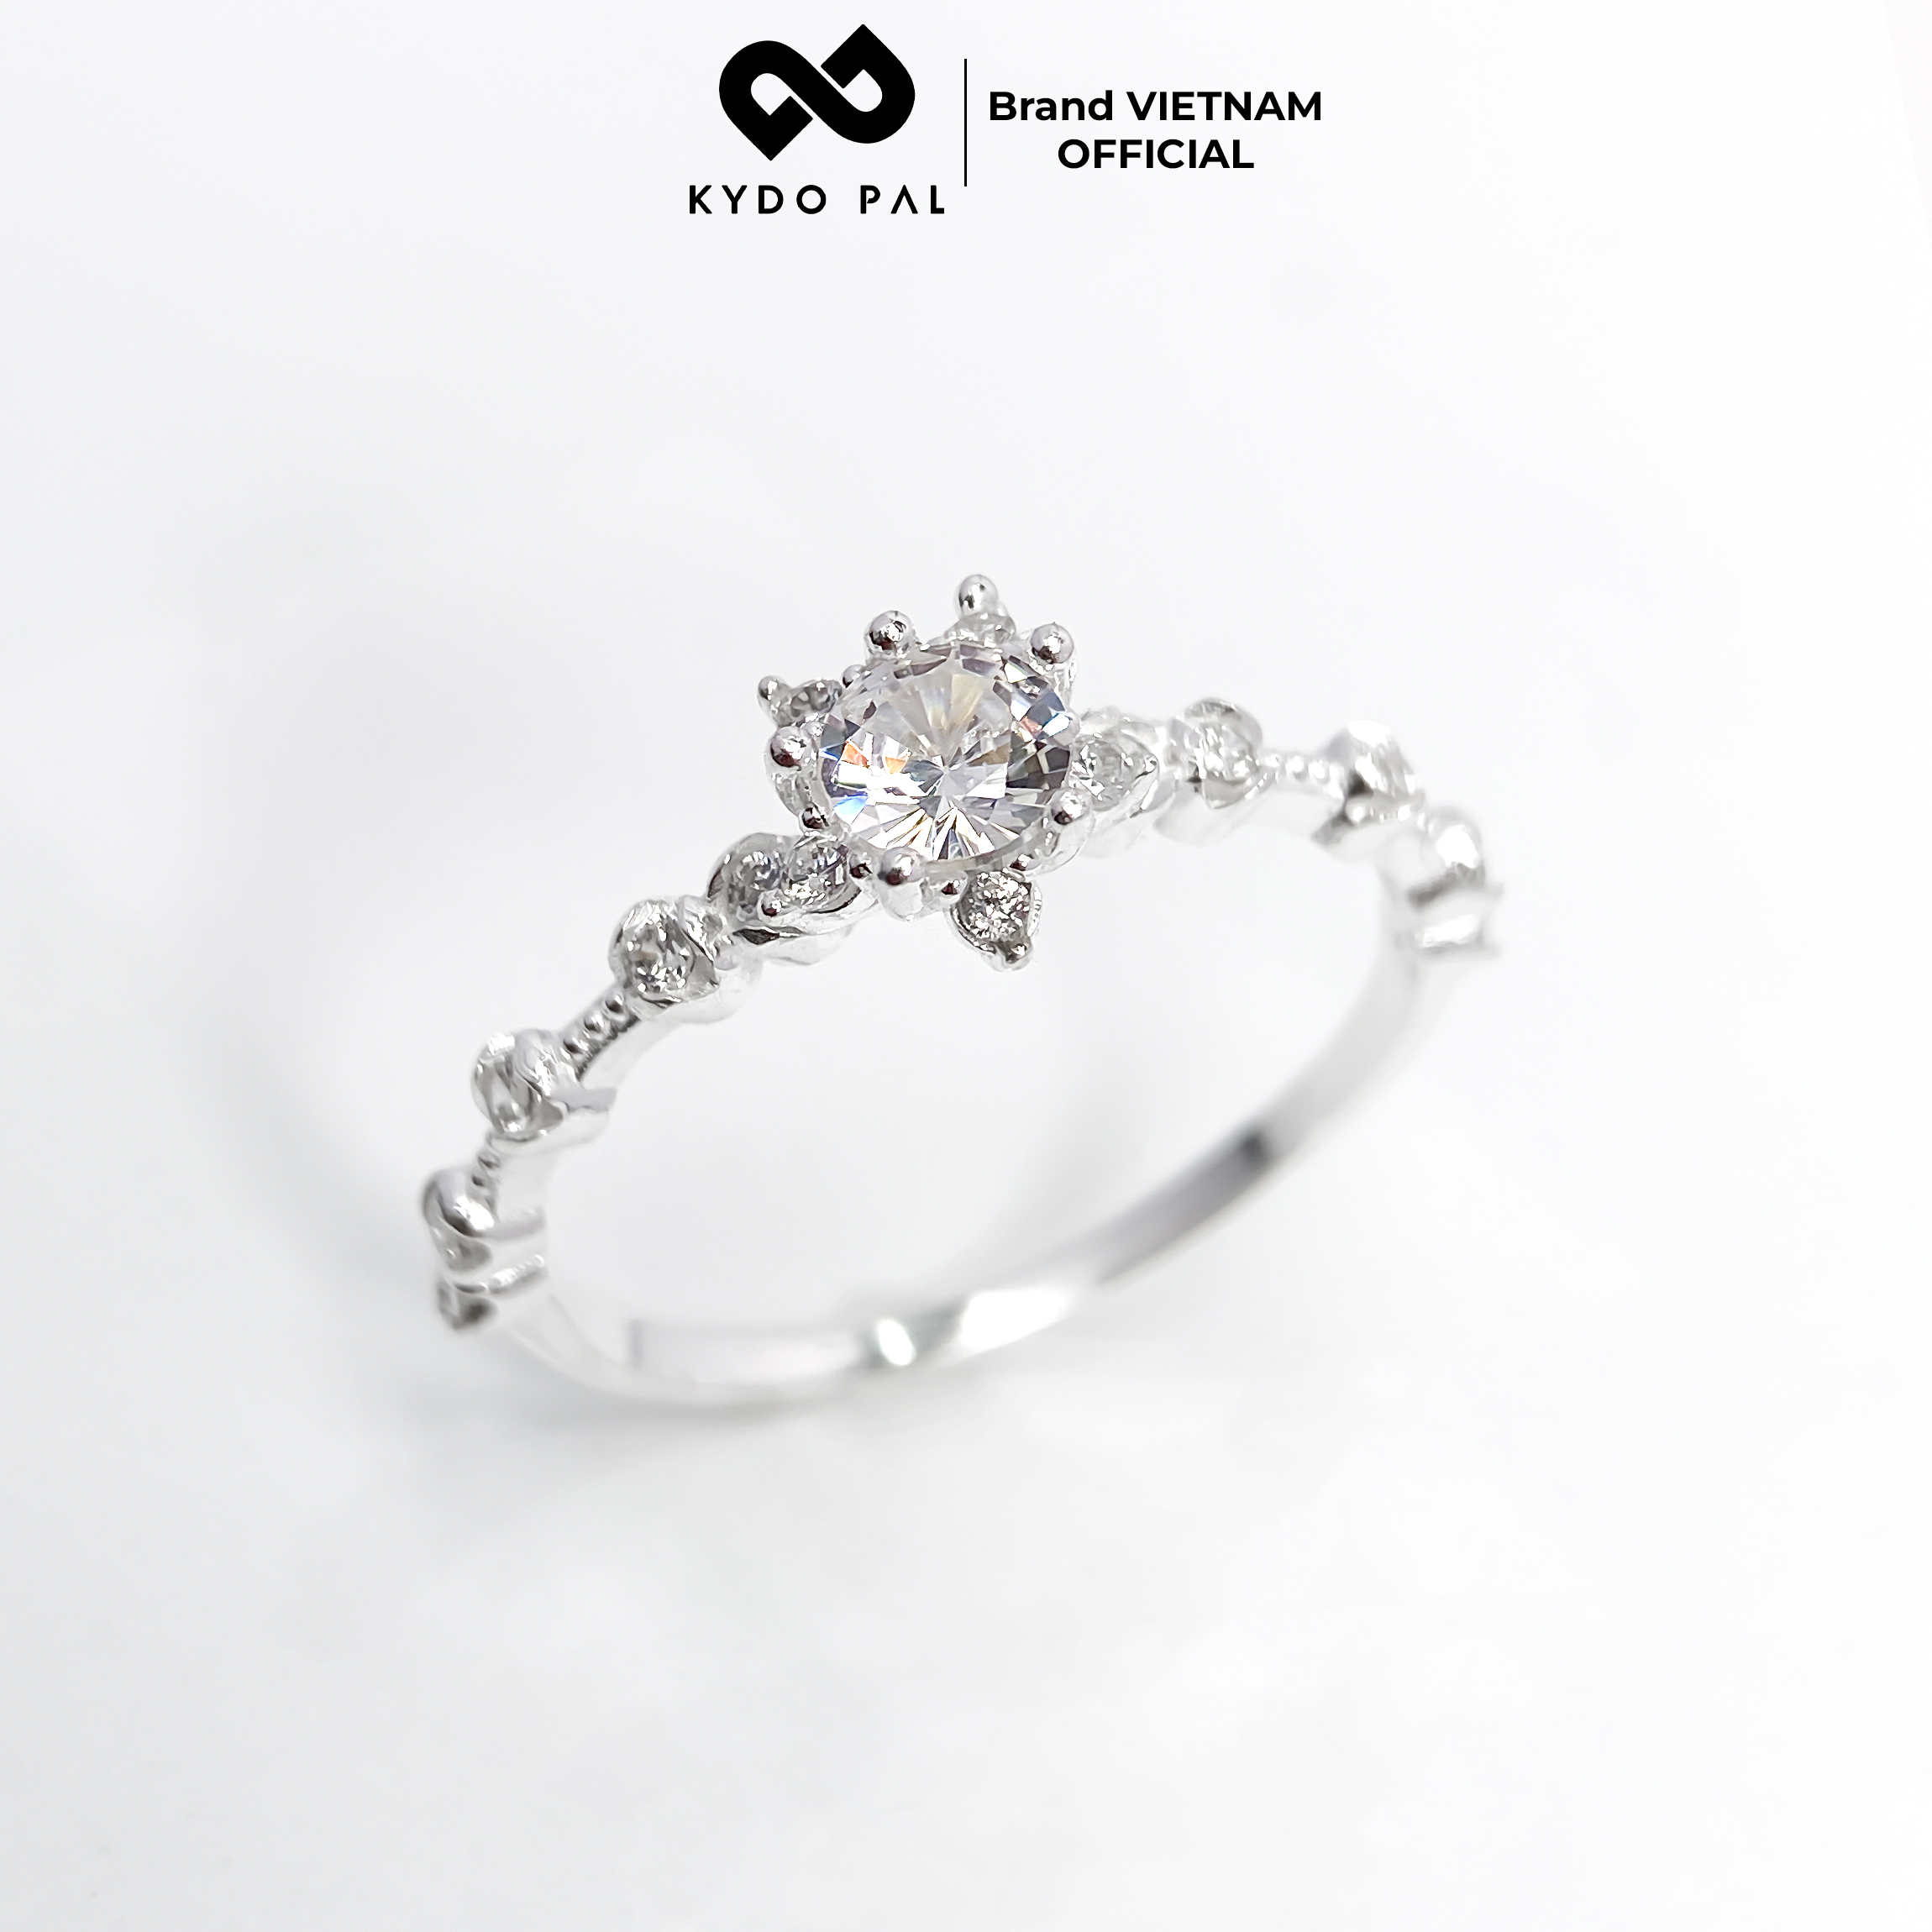 Nhẫn bạc nữ 925 KYDOPAL trang sức đính đá cao cấp siêu sang - 9N11